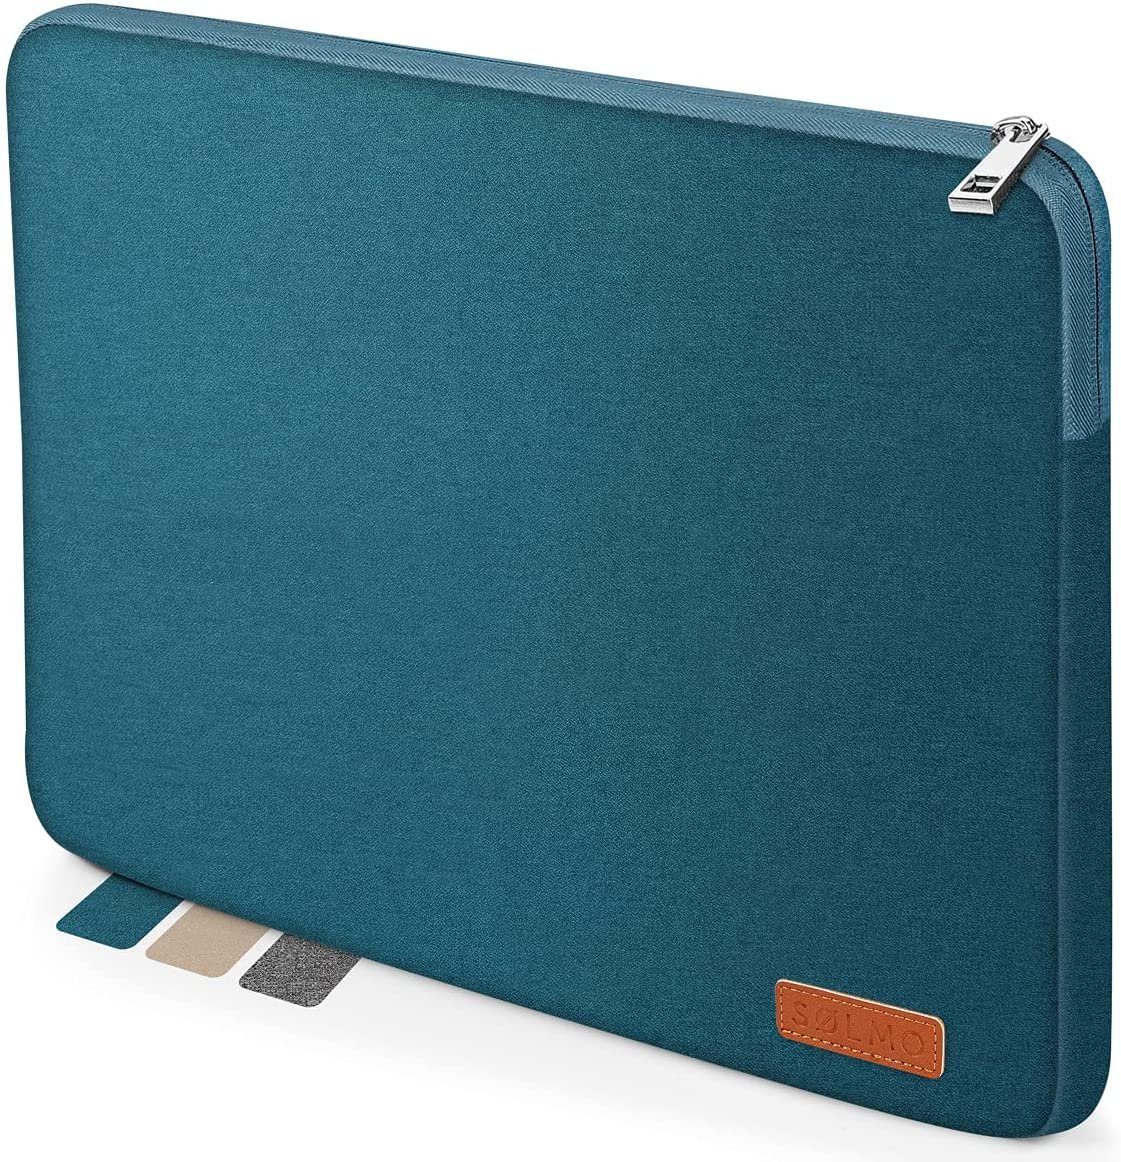 sølmo Laptoptasche sølmo - Design Laptoptasche 13 Zoll - stoßfeste  Notebooktasche geeignet für 13 Zoll MacBook Air, MacBook Pro 13, 12.3  Surface Pro